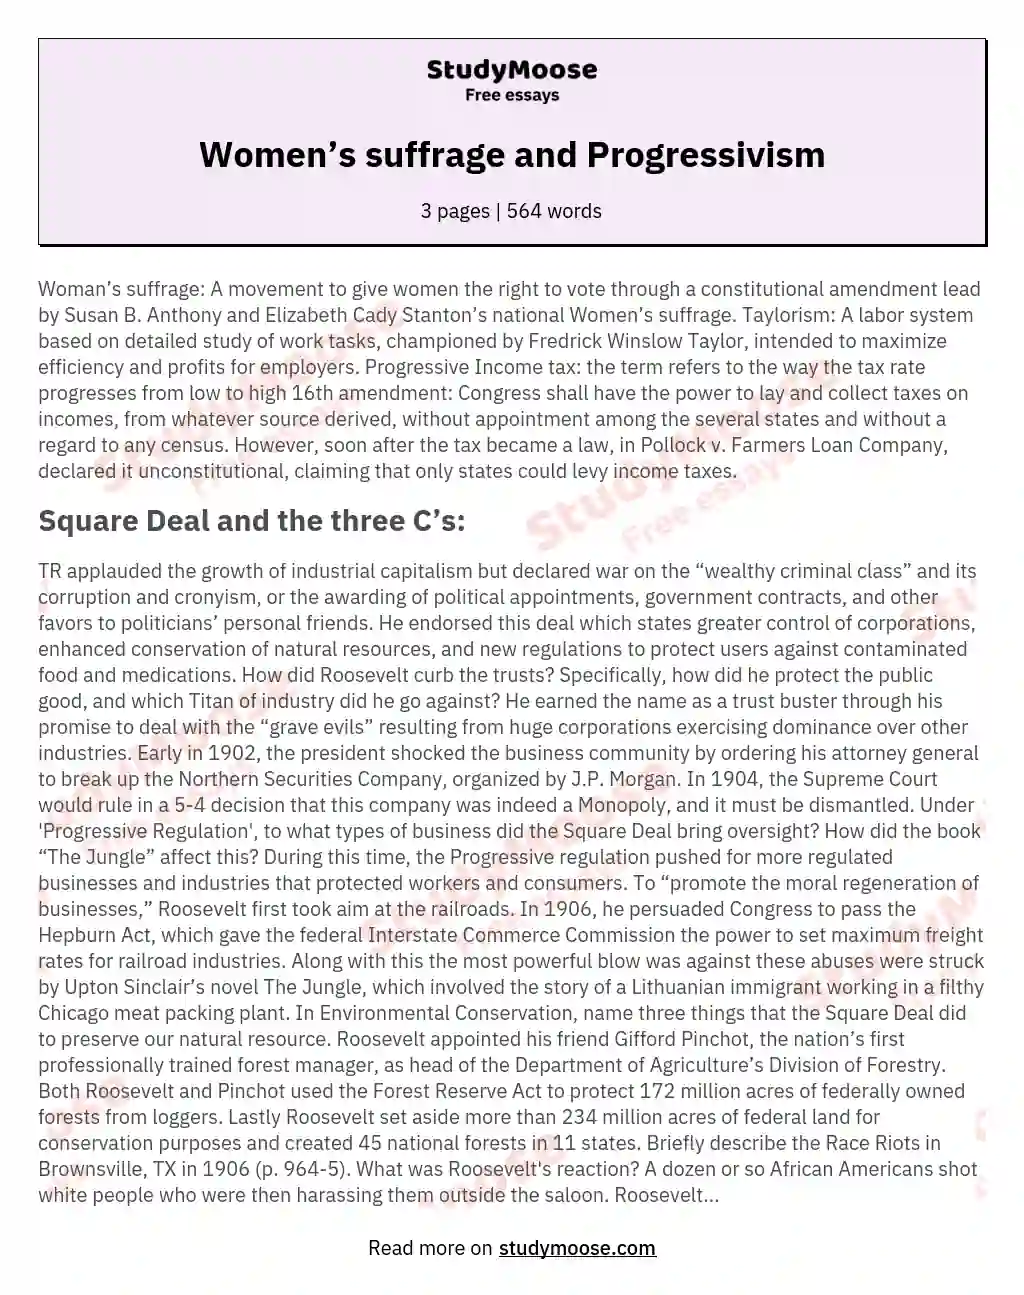 Women’s suffrage and Progressivism essay